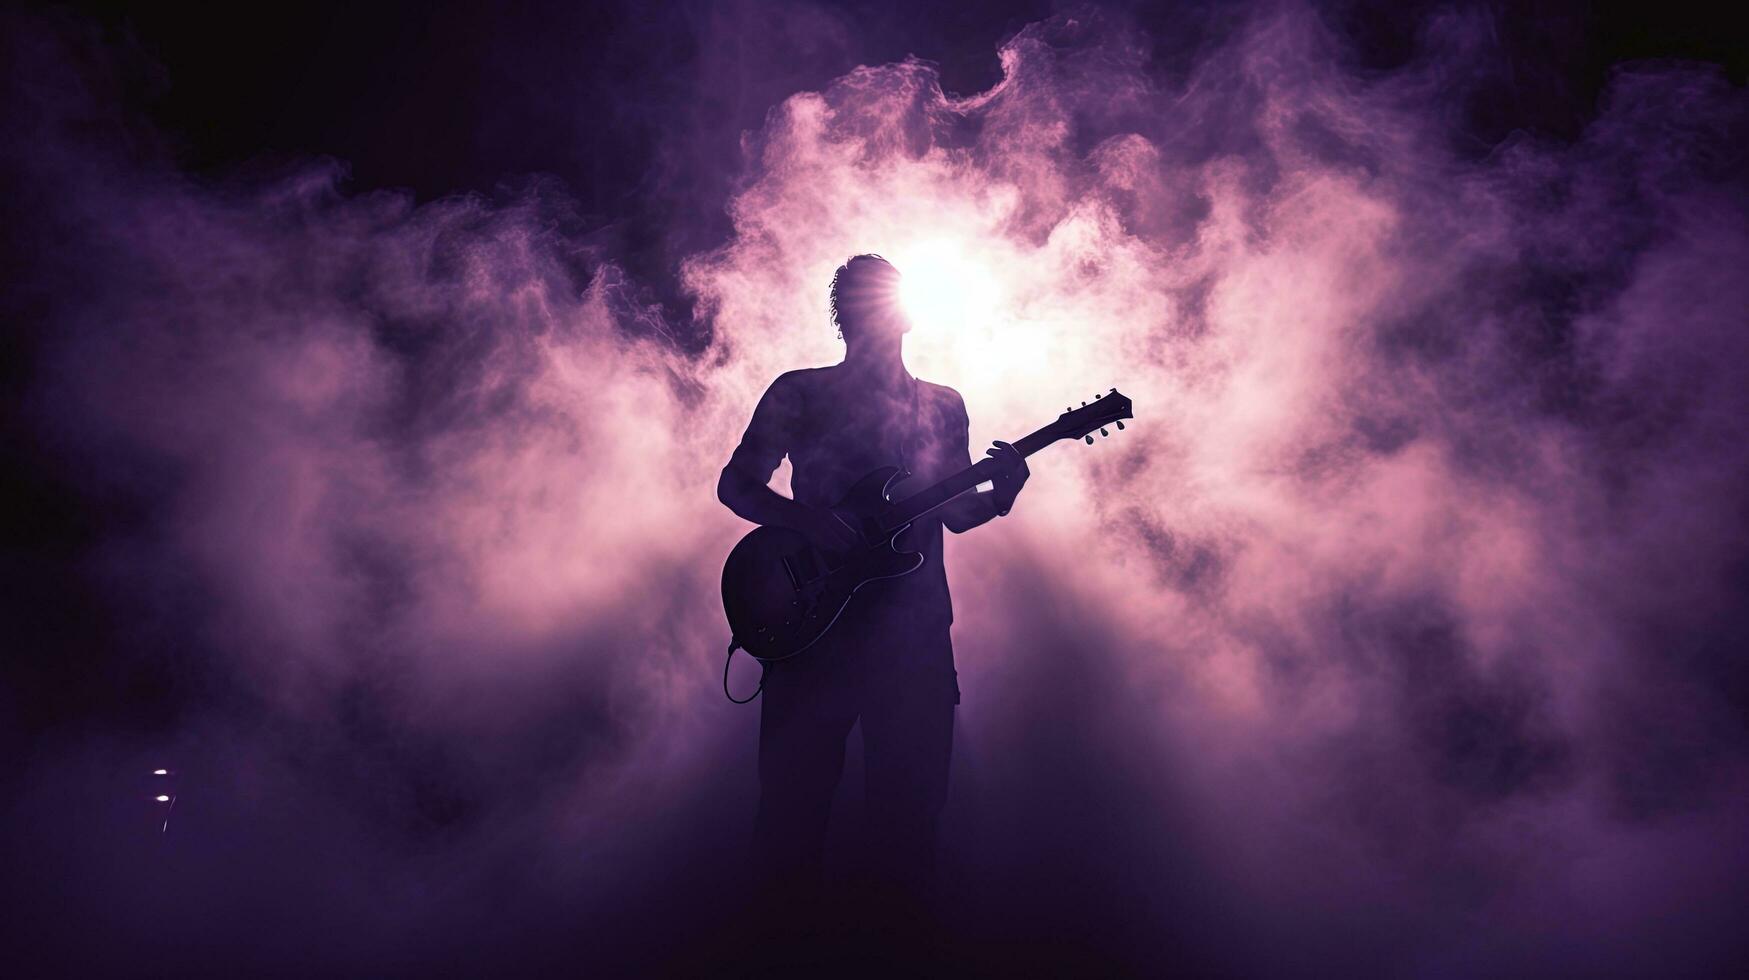 retro estilo foto de guitarrista s silueta rodeado por fumar en concierto